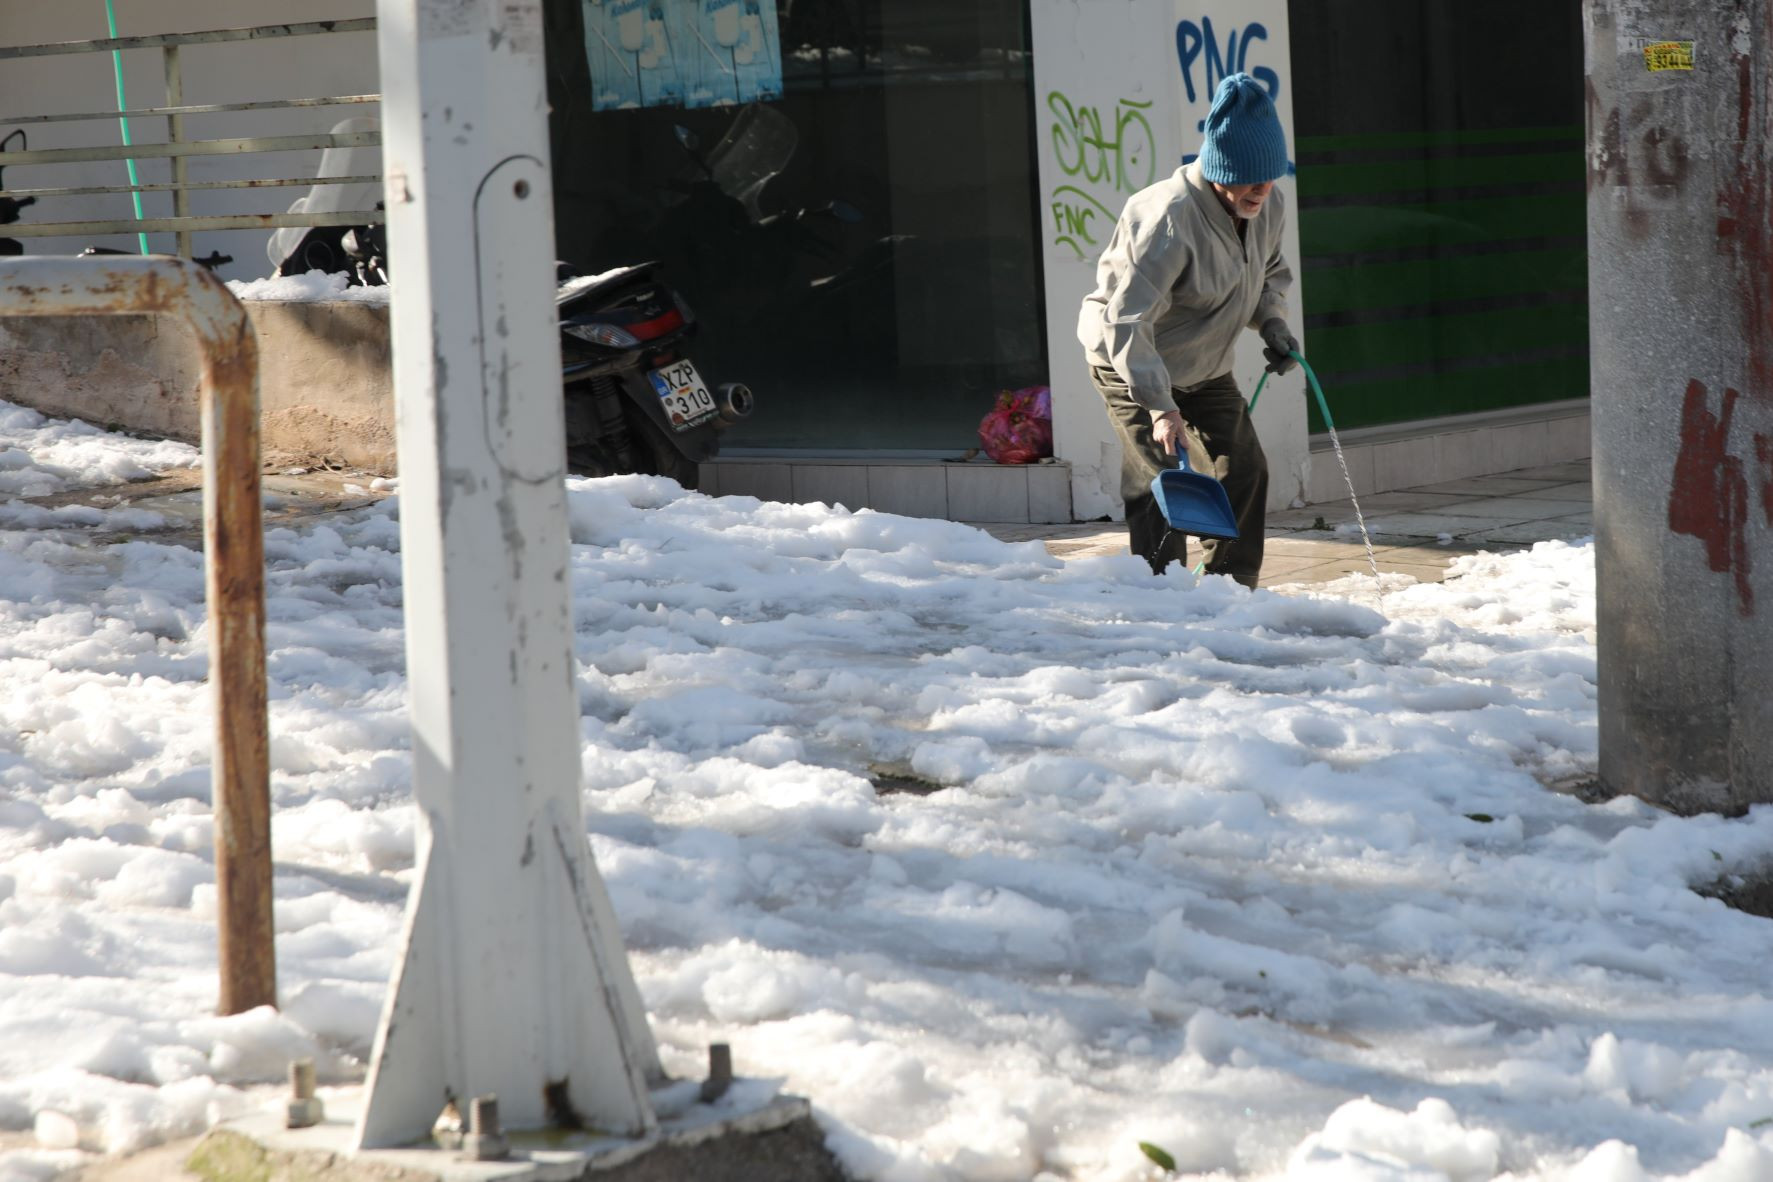 Δραματική έκκληση ηλικιωμένης στο Ντράφι Αττικής: Είμαστε αποκλεισμένοι και χωρίς ρεύμα για 16 ώρες, πότε θα μας βοηθήσουν;